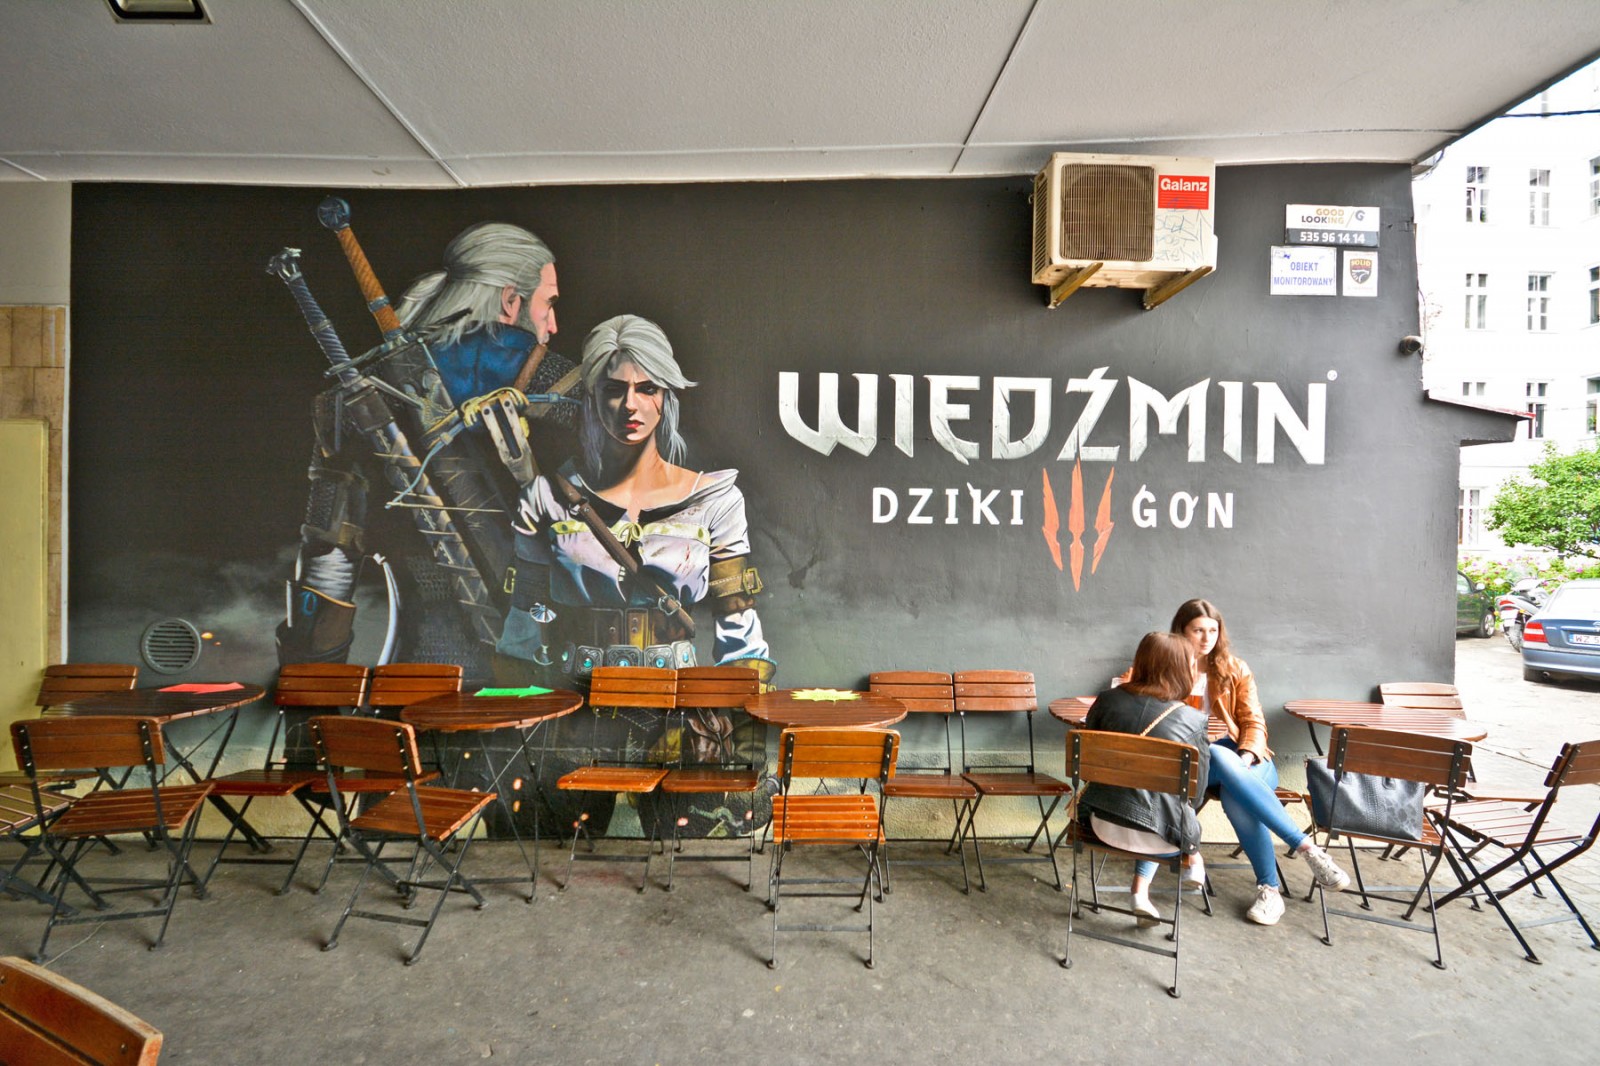 Spiel The Witcher: Wild Hunt Mural Außenwandbild Werbung an der Wand bei den Pavillons in Warschau | The Hexer: Wild Hunt Spiel | Portfolio